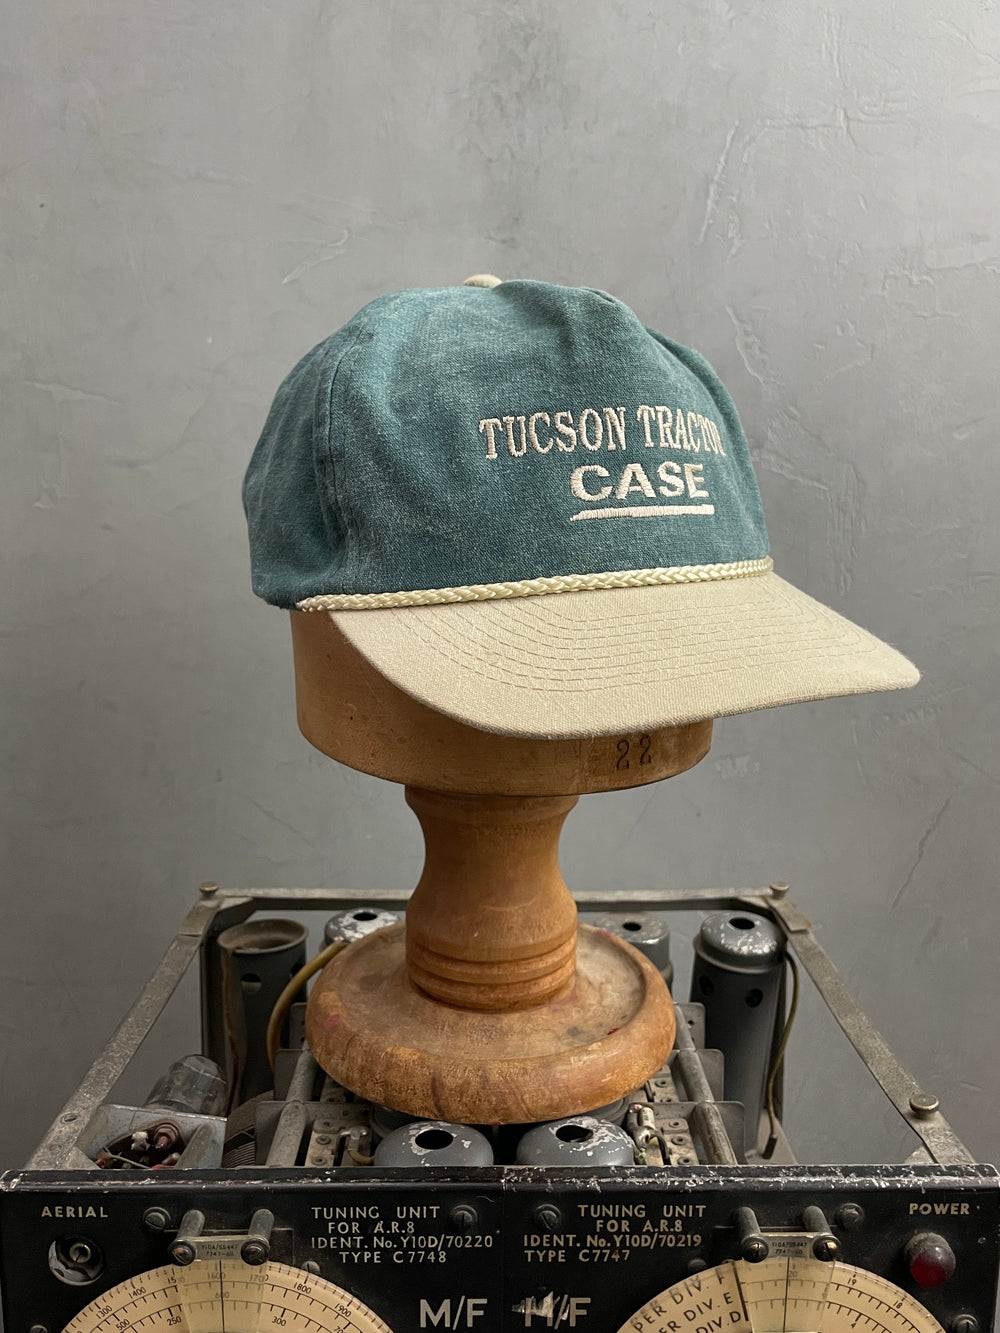 Tucson Tractor Case Cap